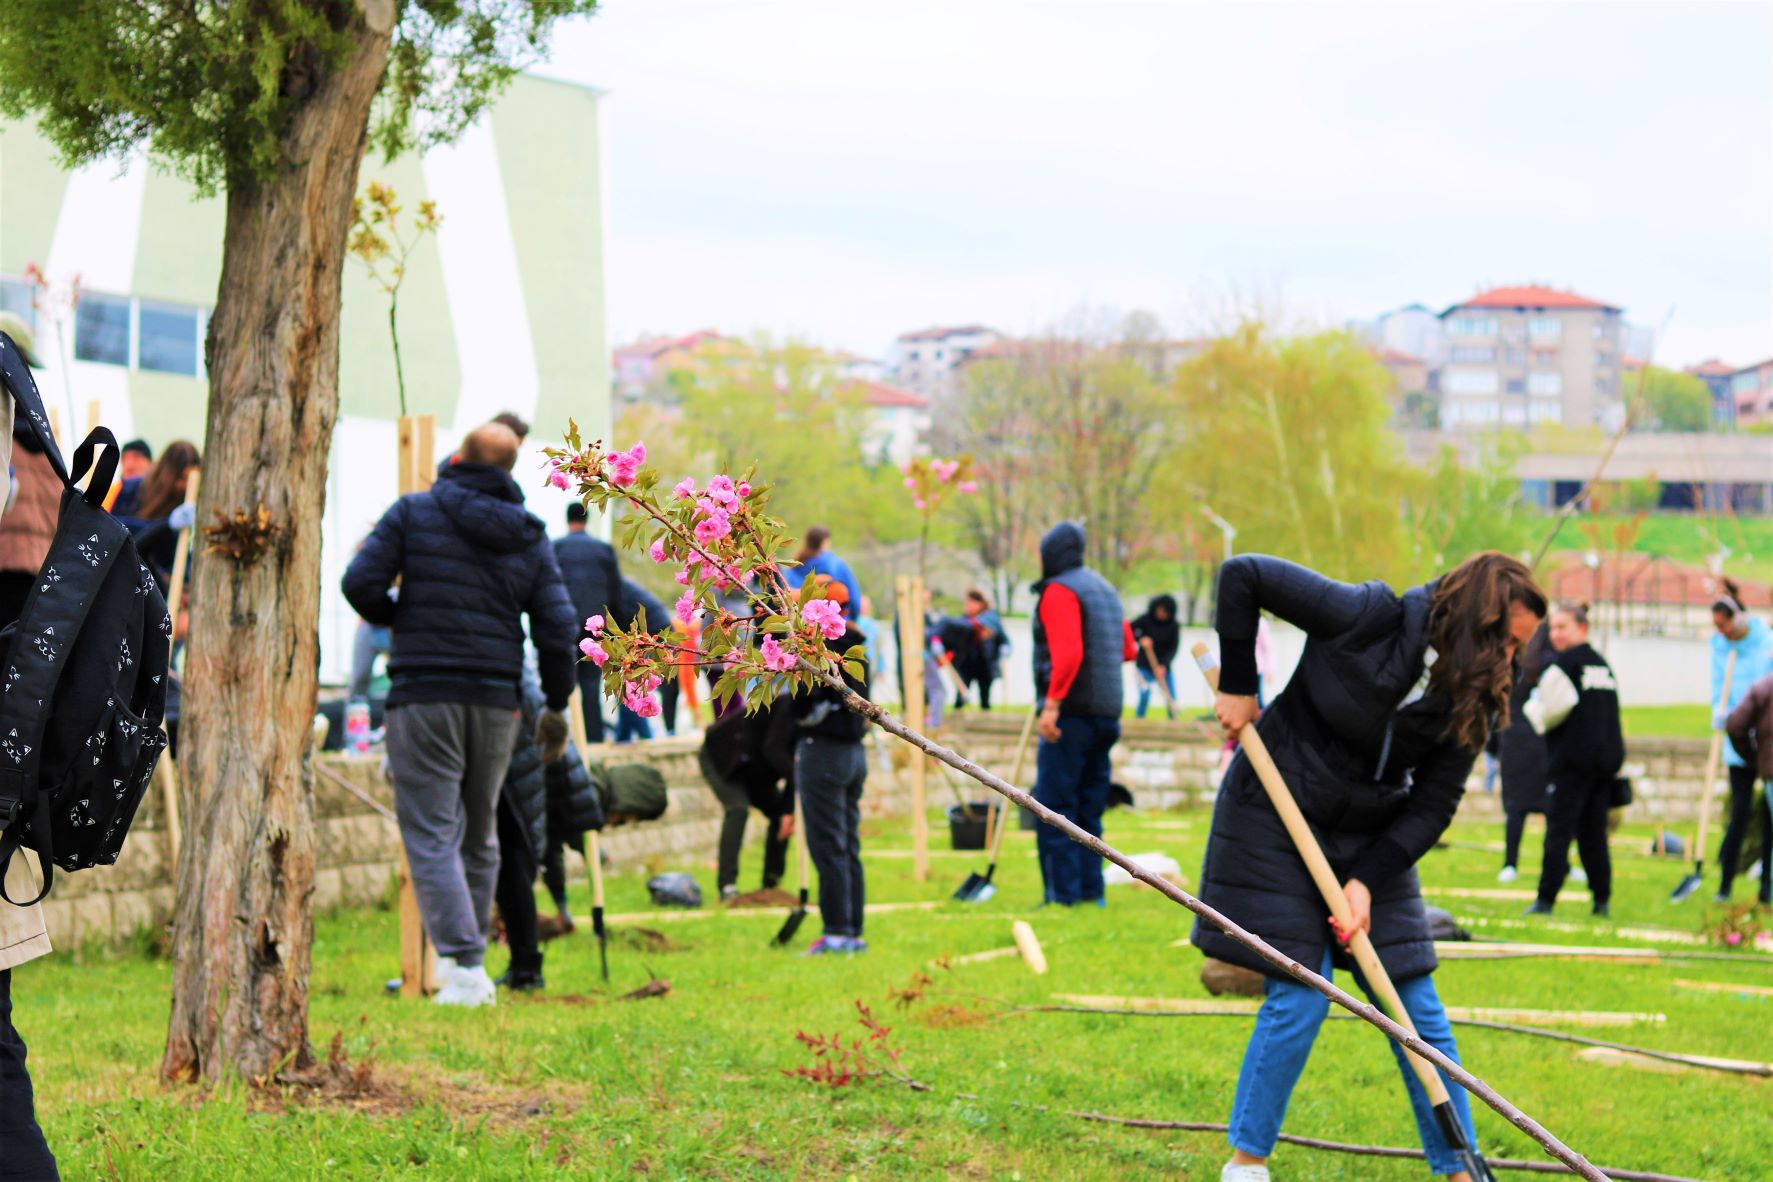 Над 100 вишни бяха засадени в парк „Македония“ в Благоевград | Blagoevgrad .eu